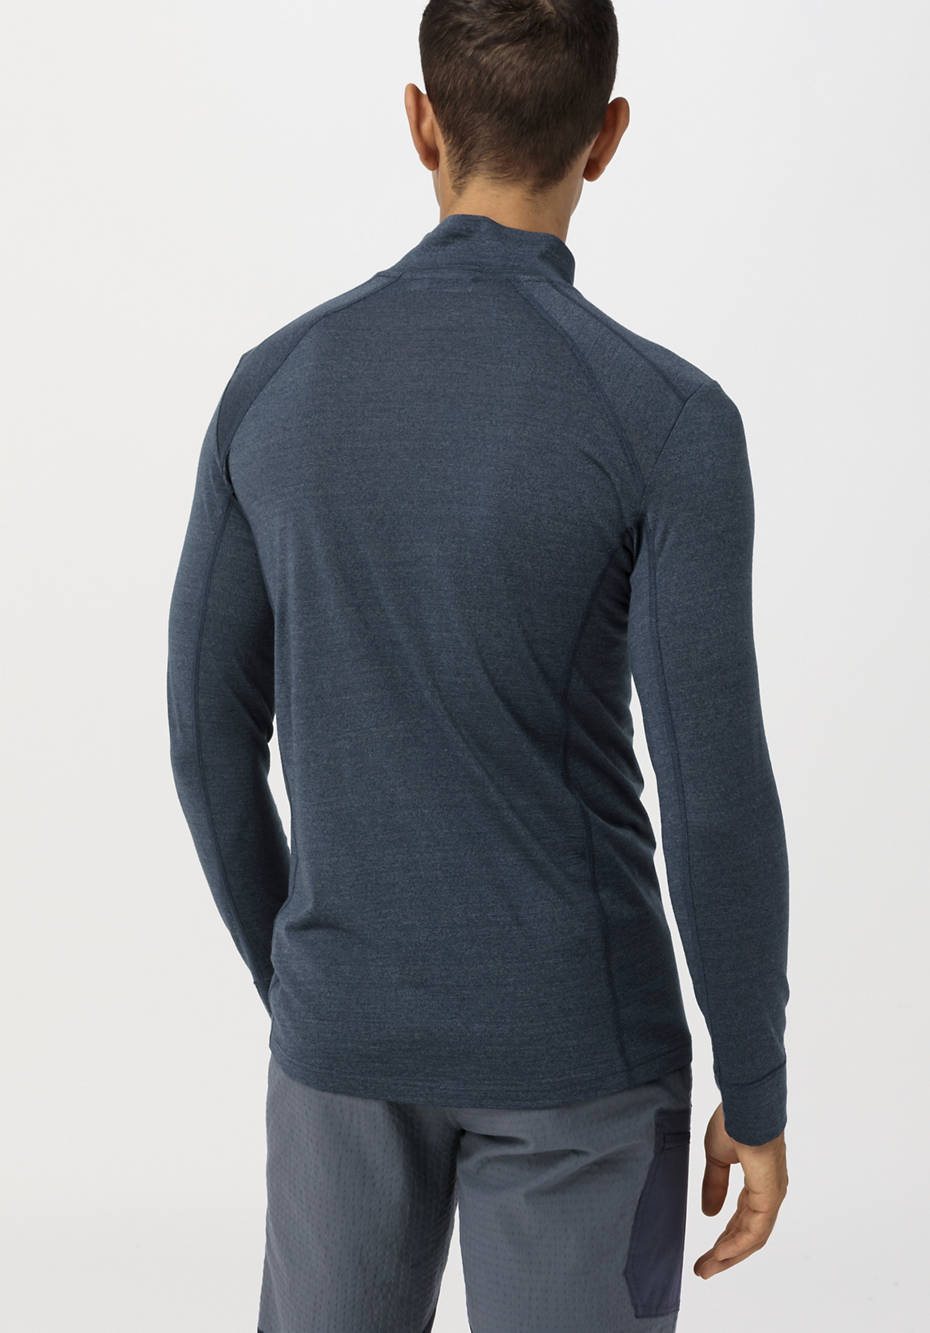 Functional shirt made of organic merino wool with silk